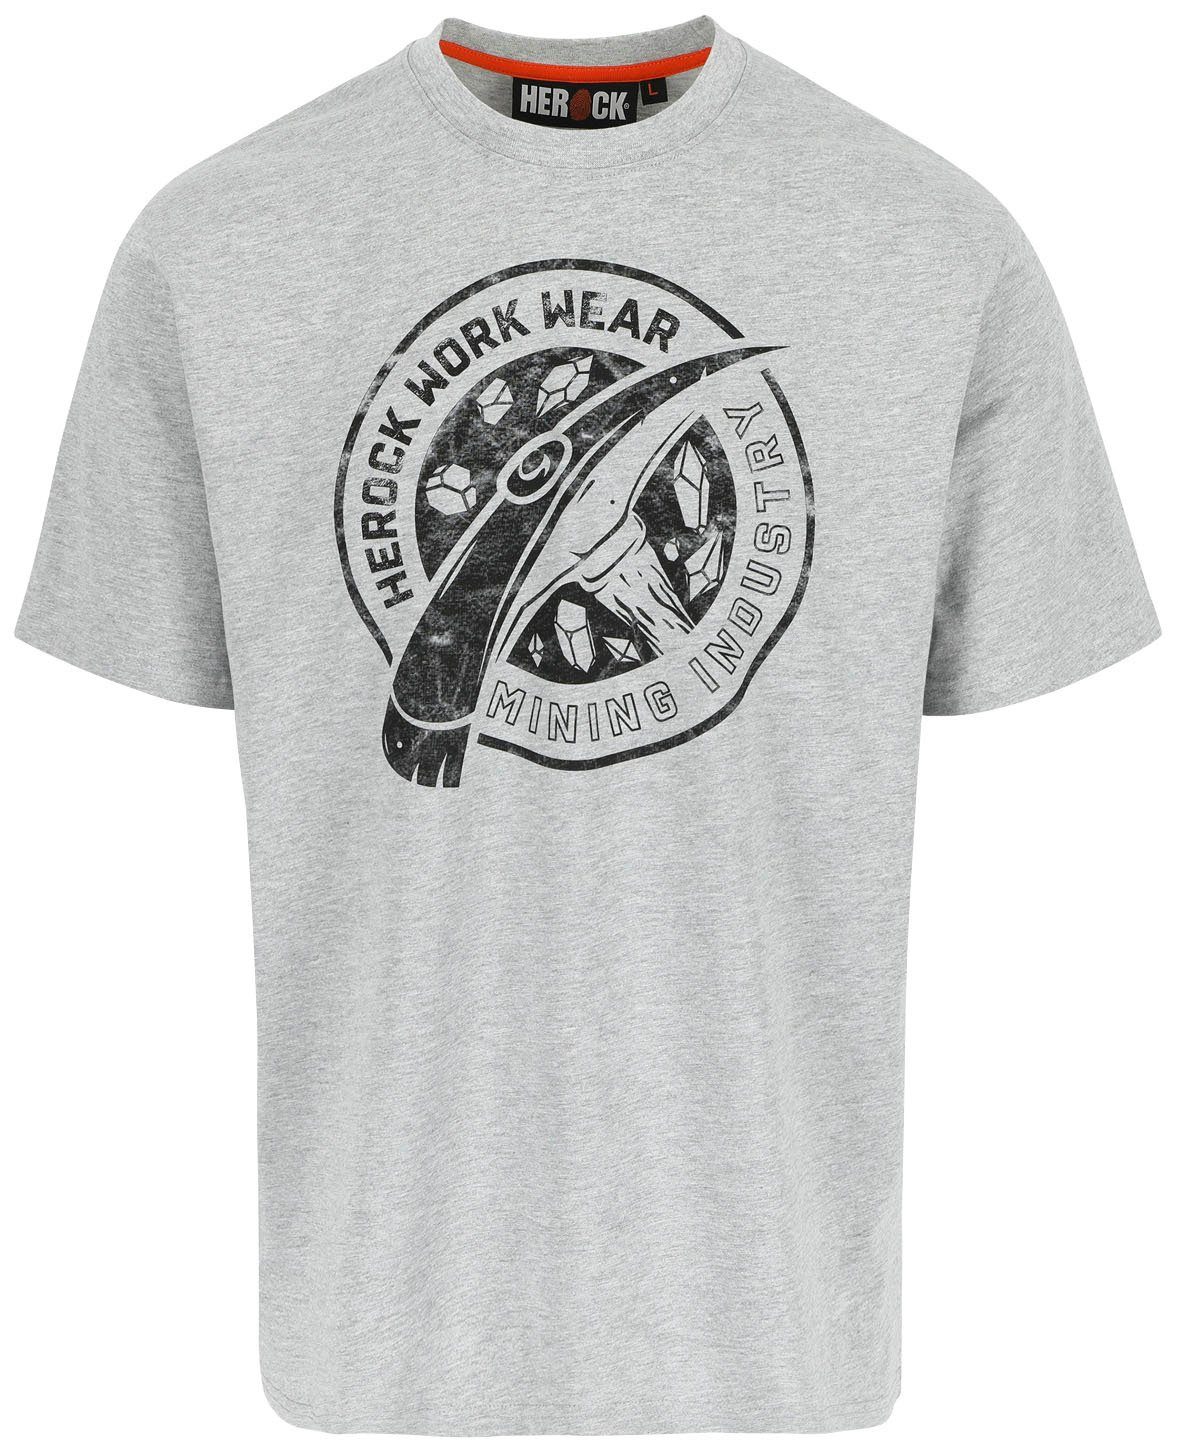 Herock T-Shirt Worker Limited Edition, in verschiedene Farben erhältlich hellgrau